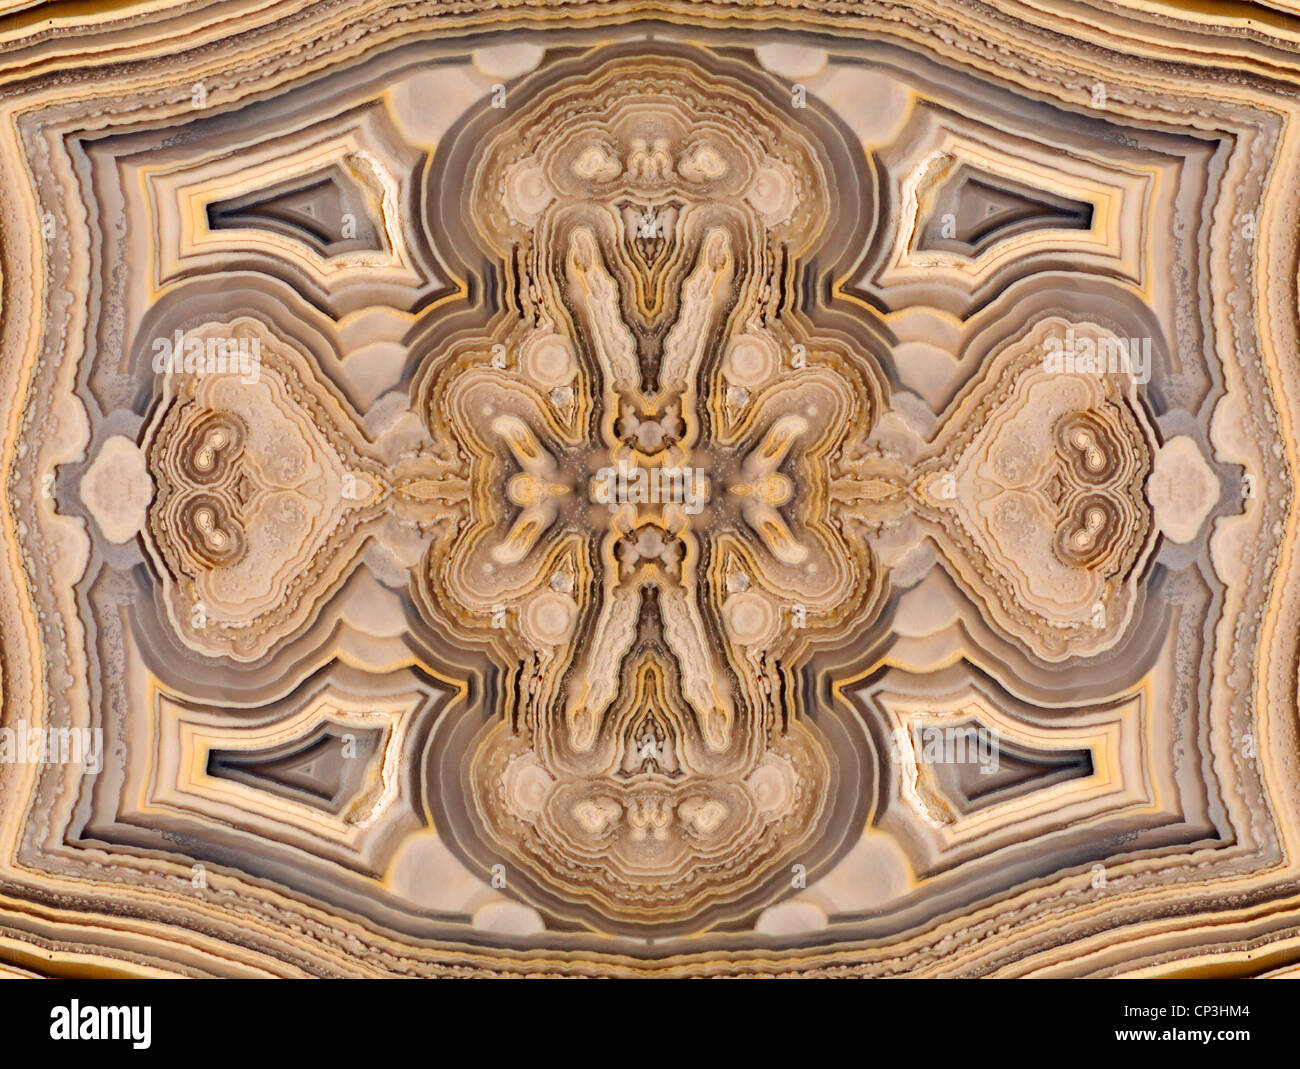 Tranche d'Agate polie (opaque, forme à grain fin de calcédoine) motif symétrique faite par la répétition de l'image Banque D'Images